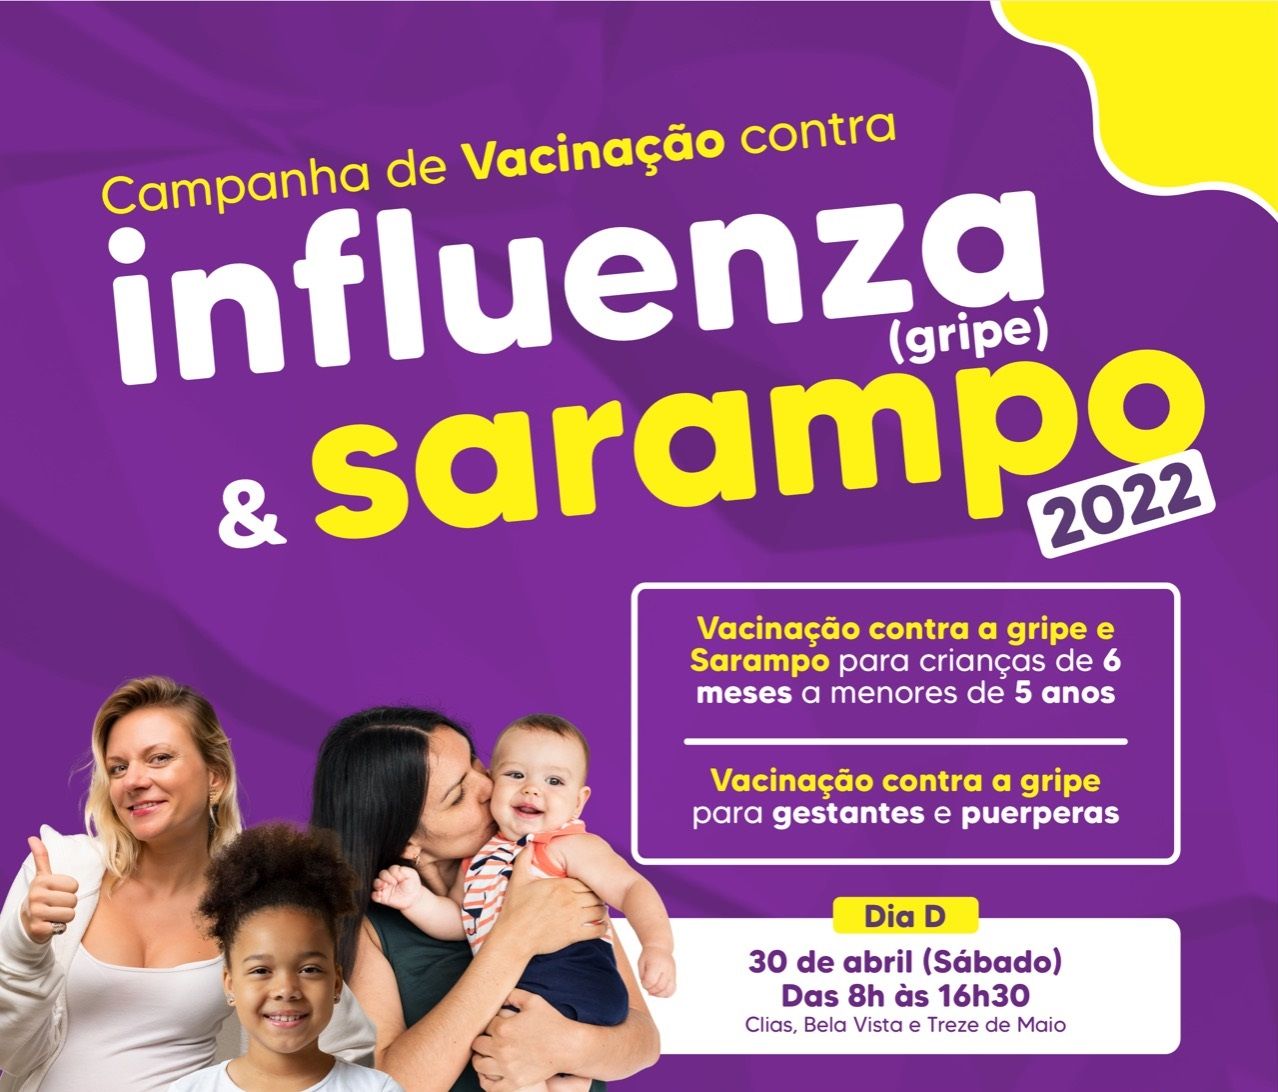 Santa Fé do Sul irá realizar Dia D de Vacinação contra gripe e sarampo no sábado, dia 30 de abril